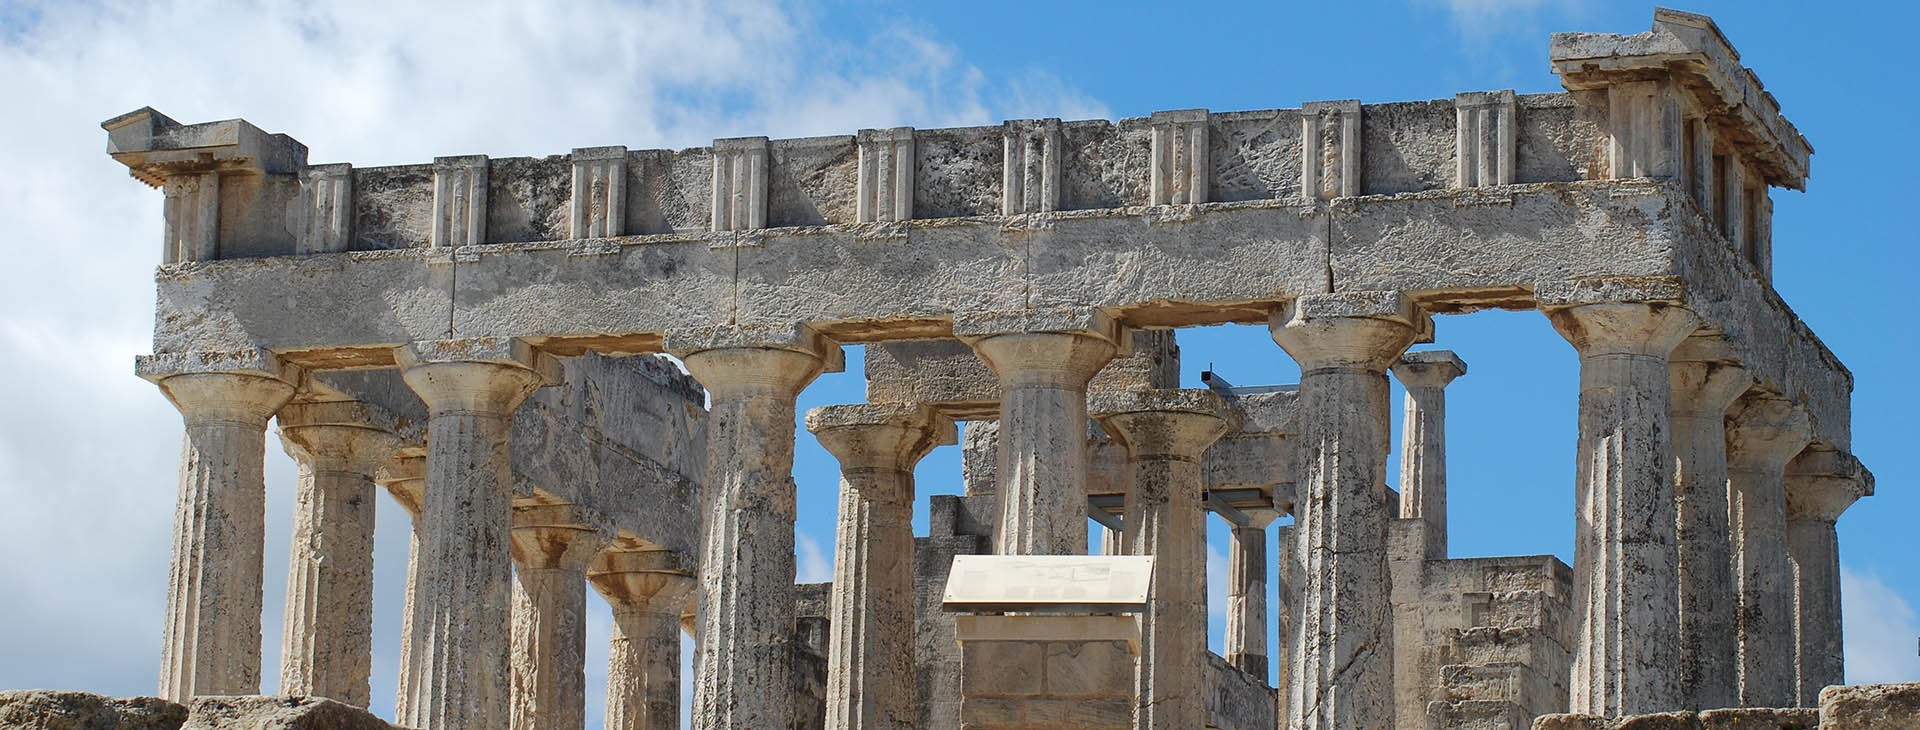 Temple of Aphaia, Aegina island